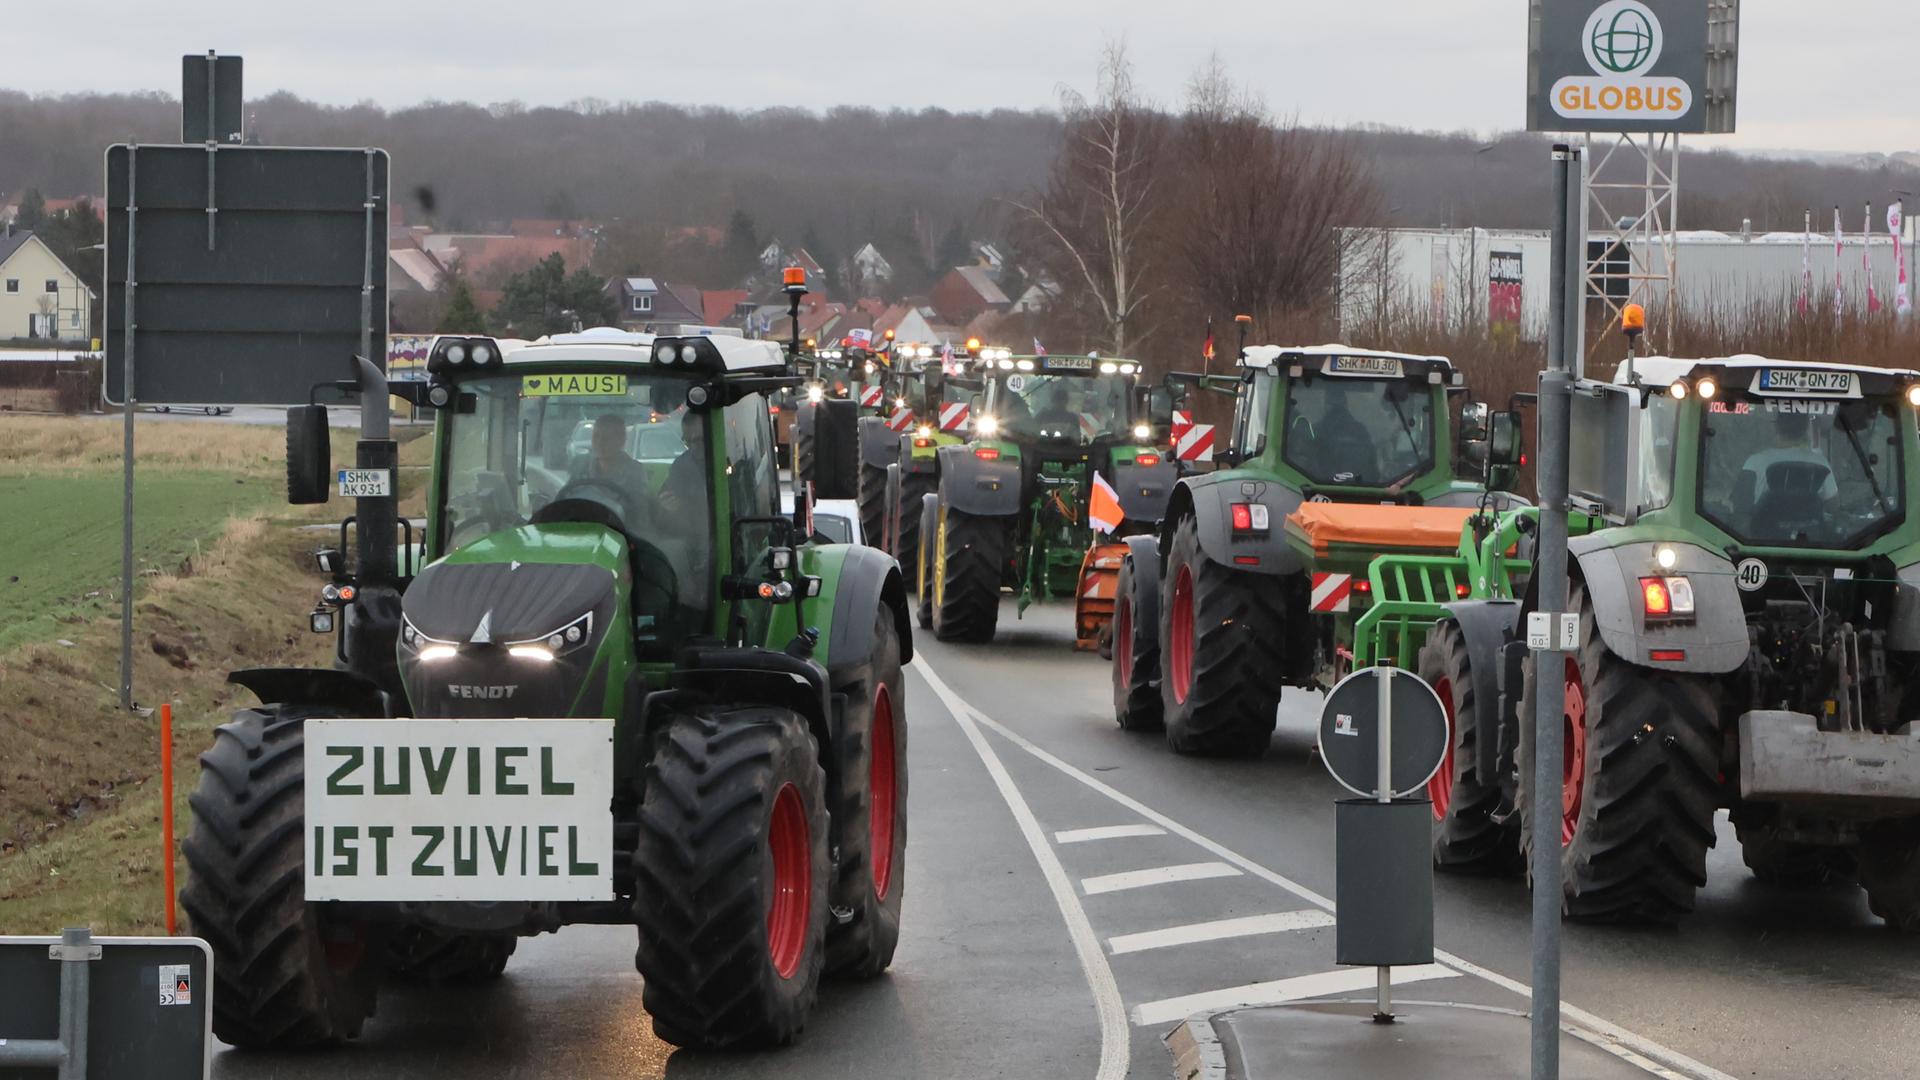 Bauernprotest in Thüringen gegen die Agrarpolitik der Ampelregierung. Zu sehen sind mehrere Traktoren auf einer Straße, die vermutlich nach Berlin fahren. An einem hängt ein Schild, das bemalt ist mit dem Slogan "Zuviel ist zu viel". 